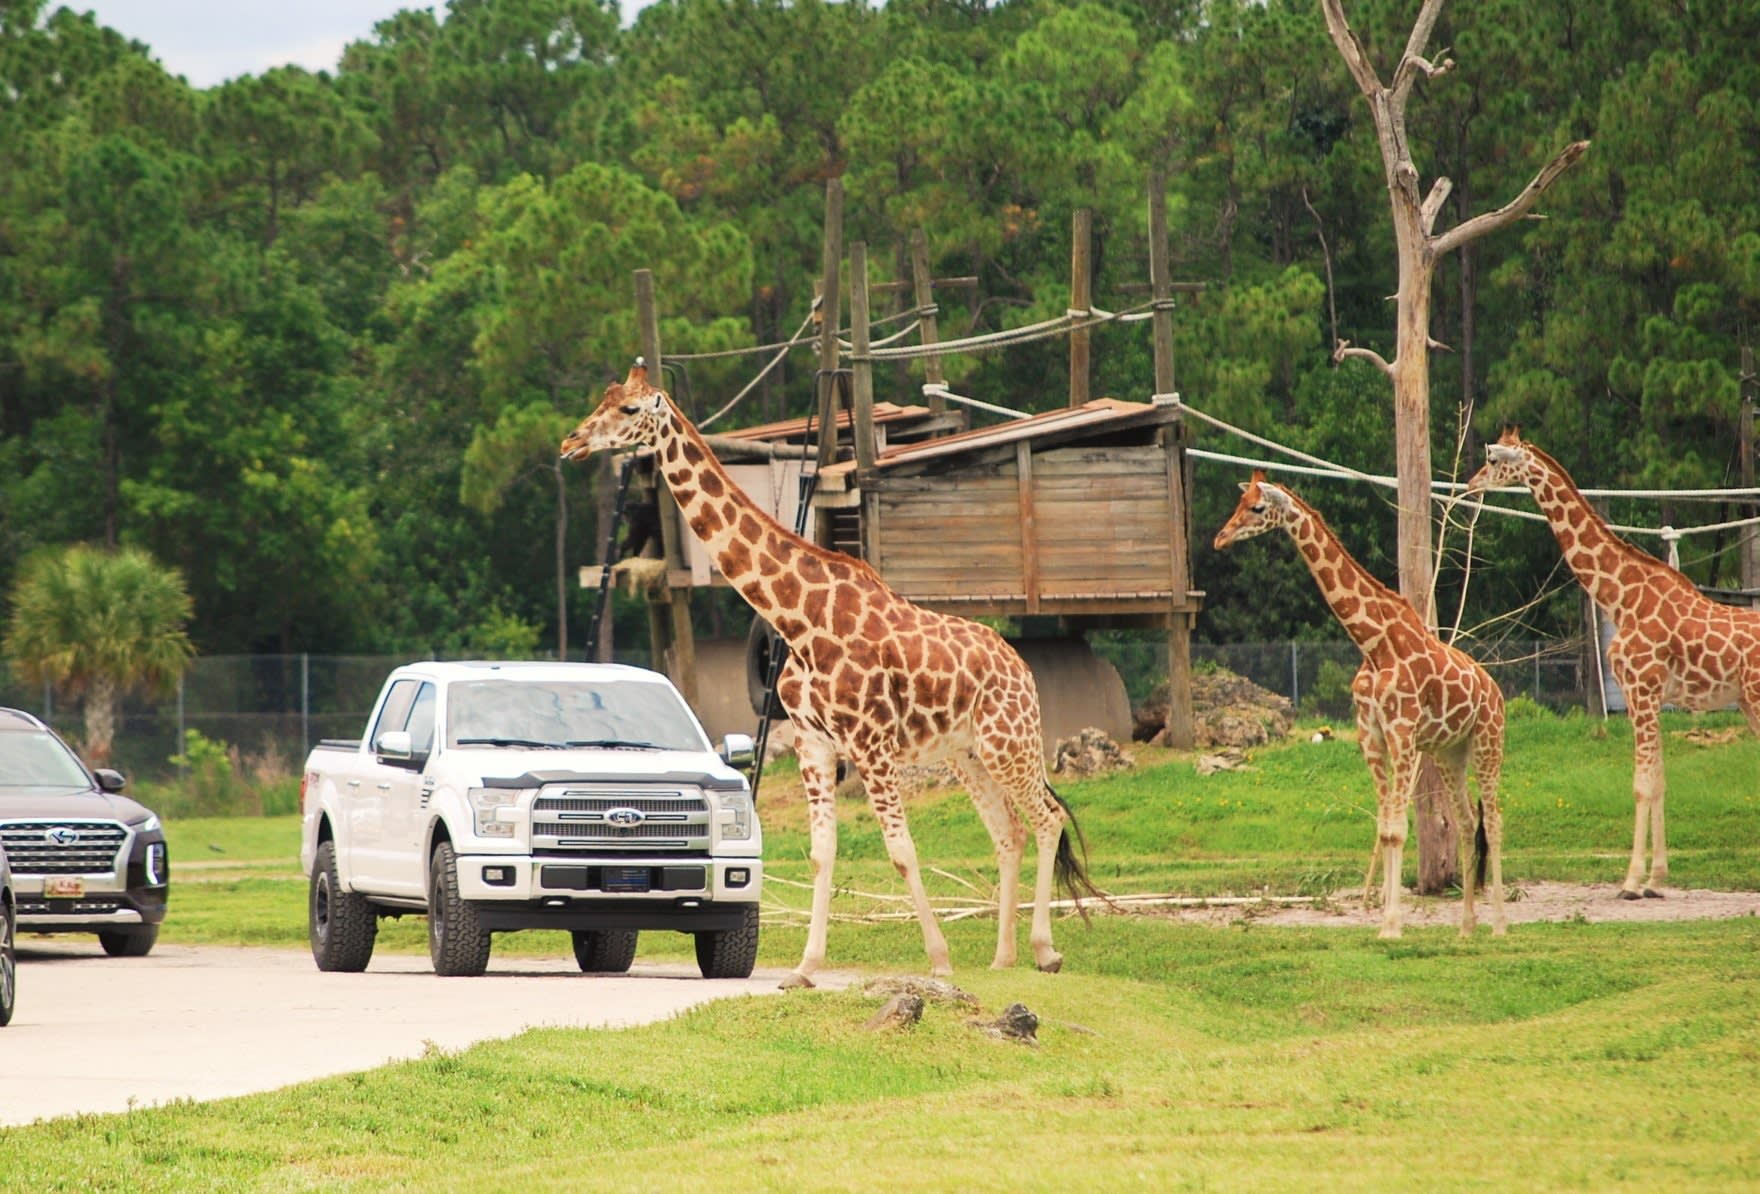 Image of Outdoors, Nature, Car, Vehicle, Pickup Truck, Truck, Animal, Zoo, Giraffe, Mammal, Wildlife, 